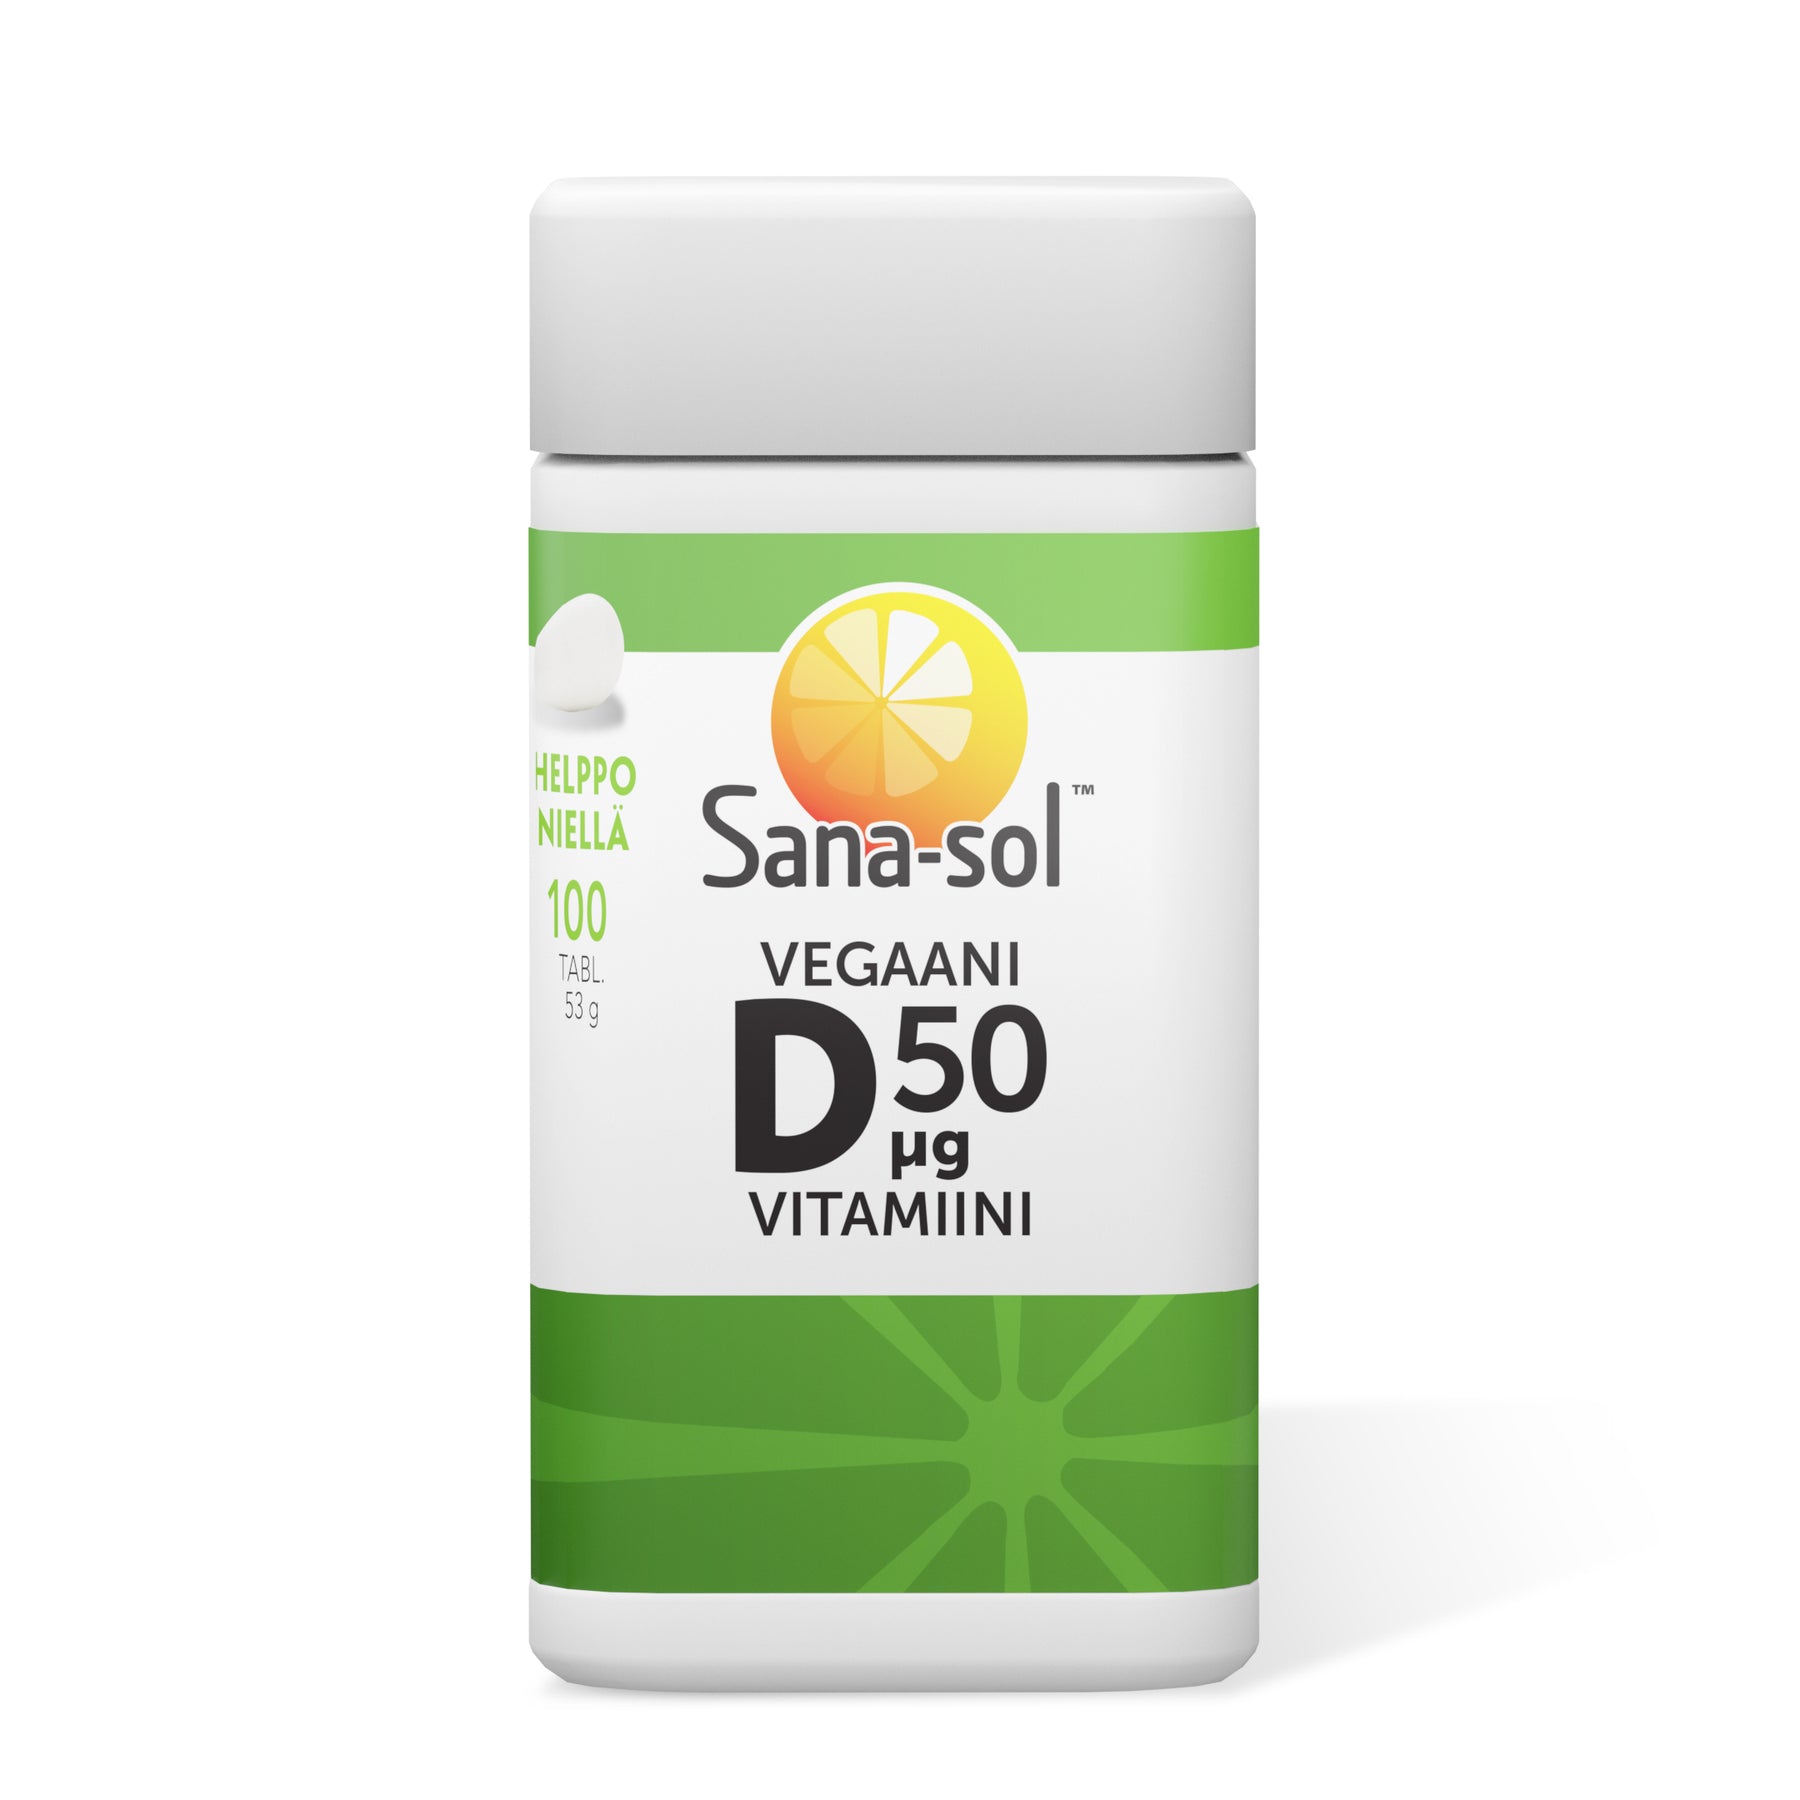 Sana-sol Vegaani D-Vitamiini 50 μg 100 tabl.